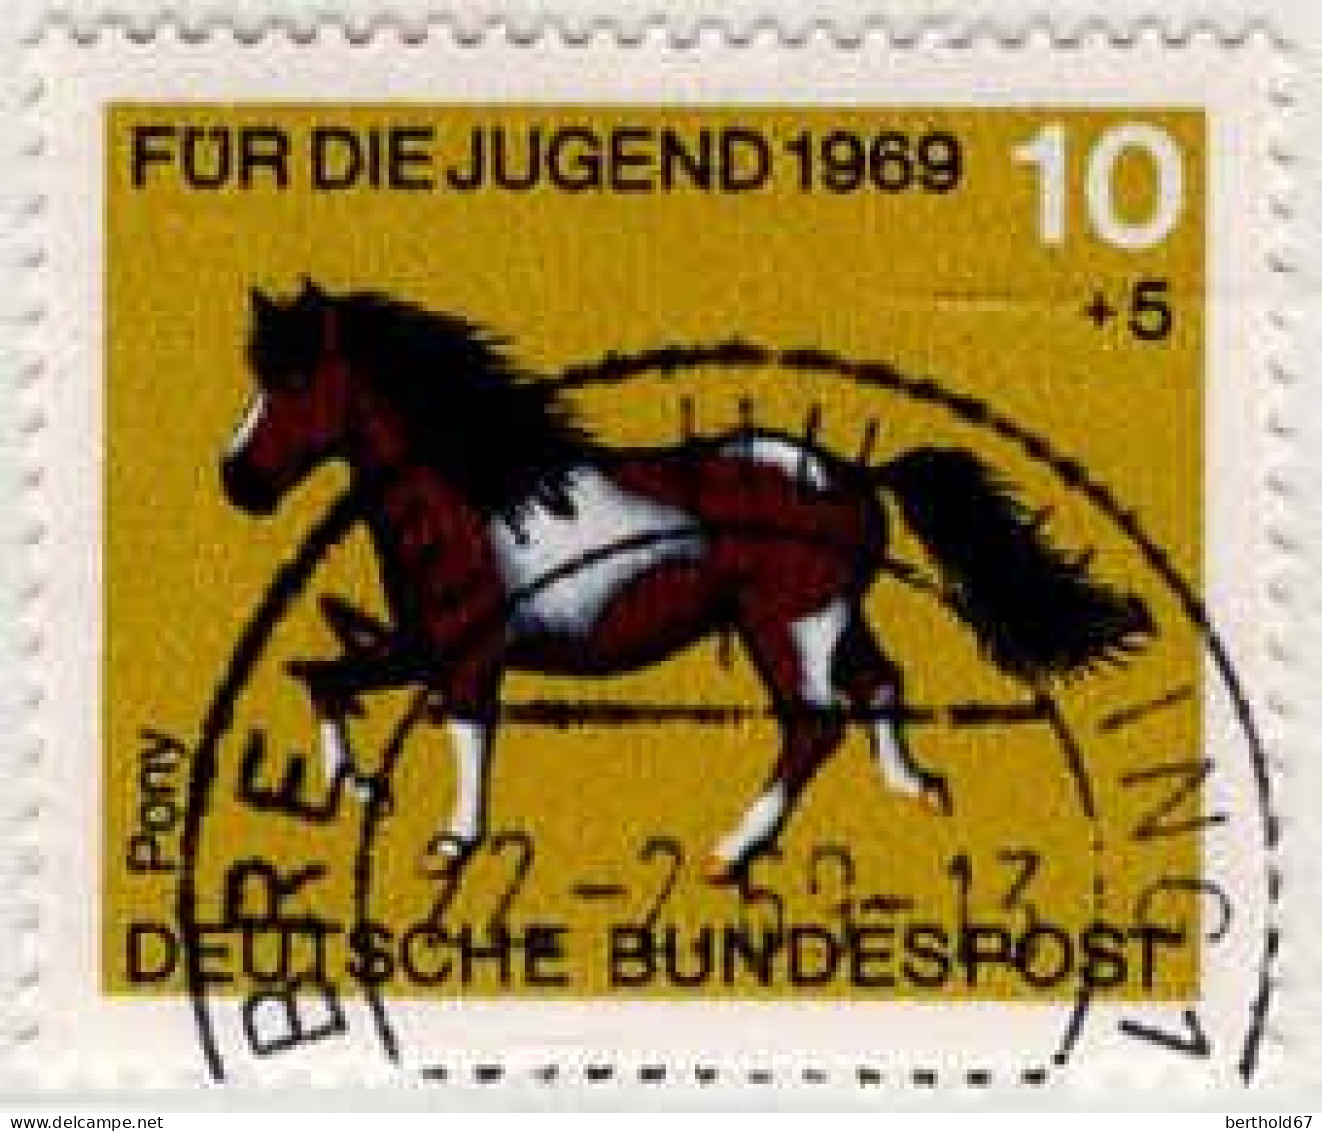 RFA Poste Obl Yv: 441/444 Für Die Jugend Chevaux (Thème) - Paarden